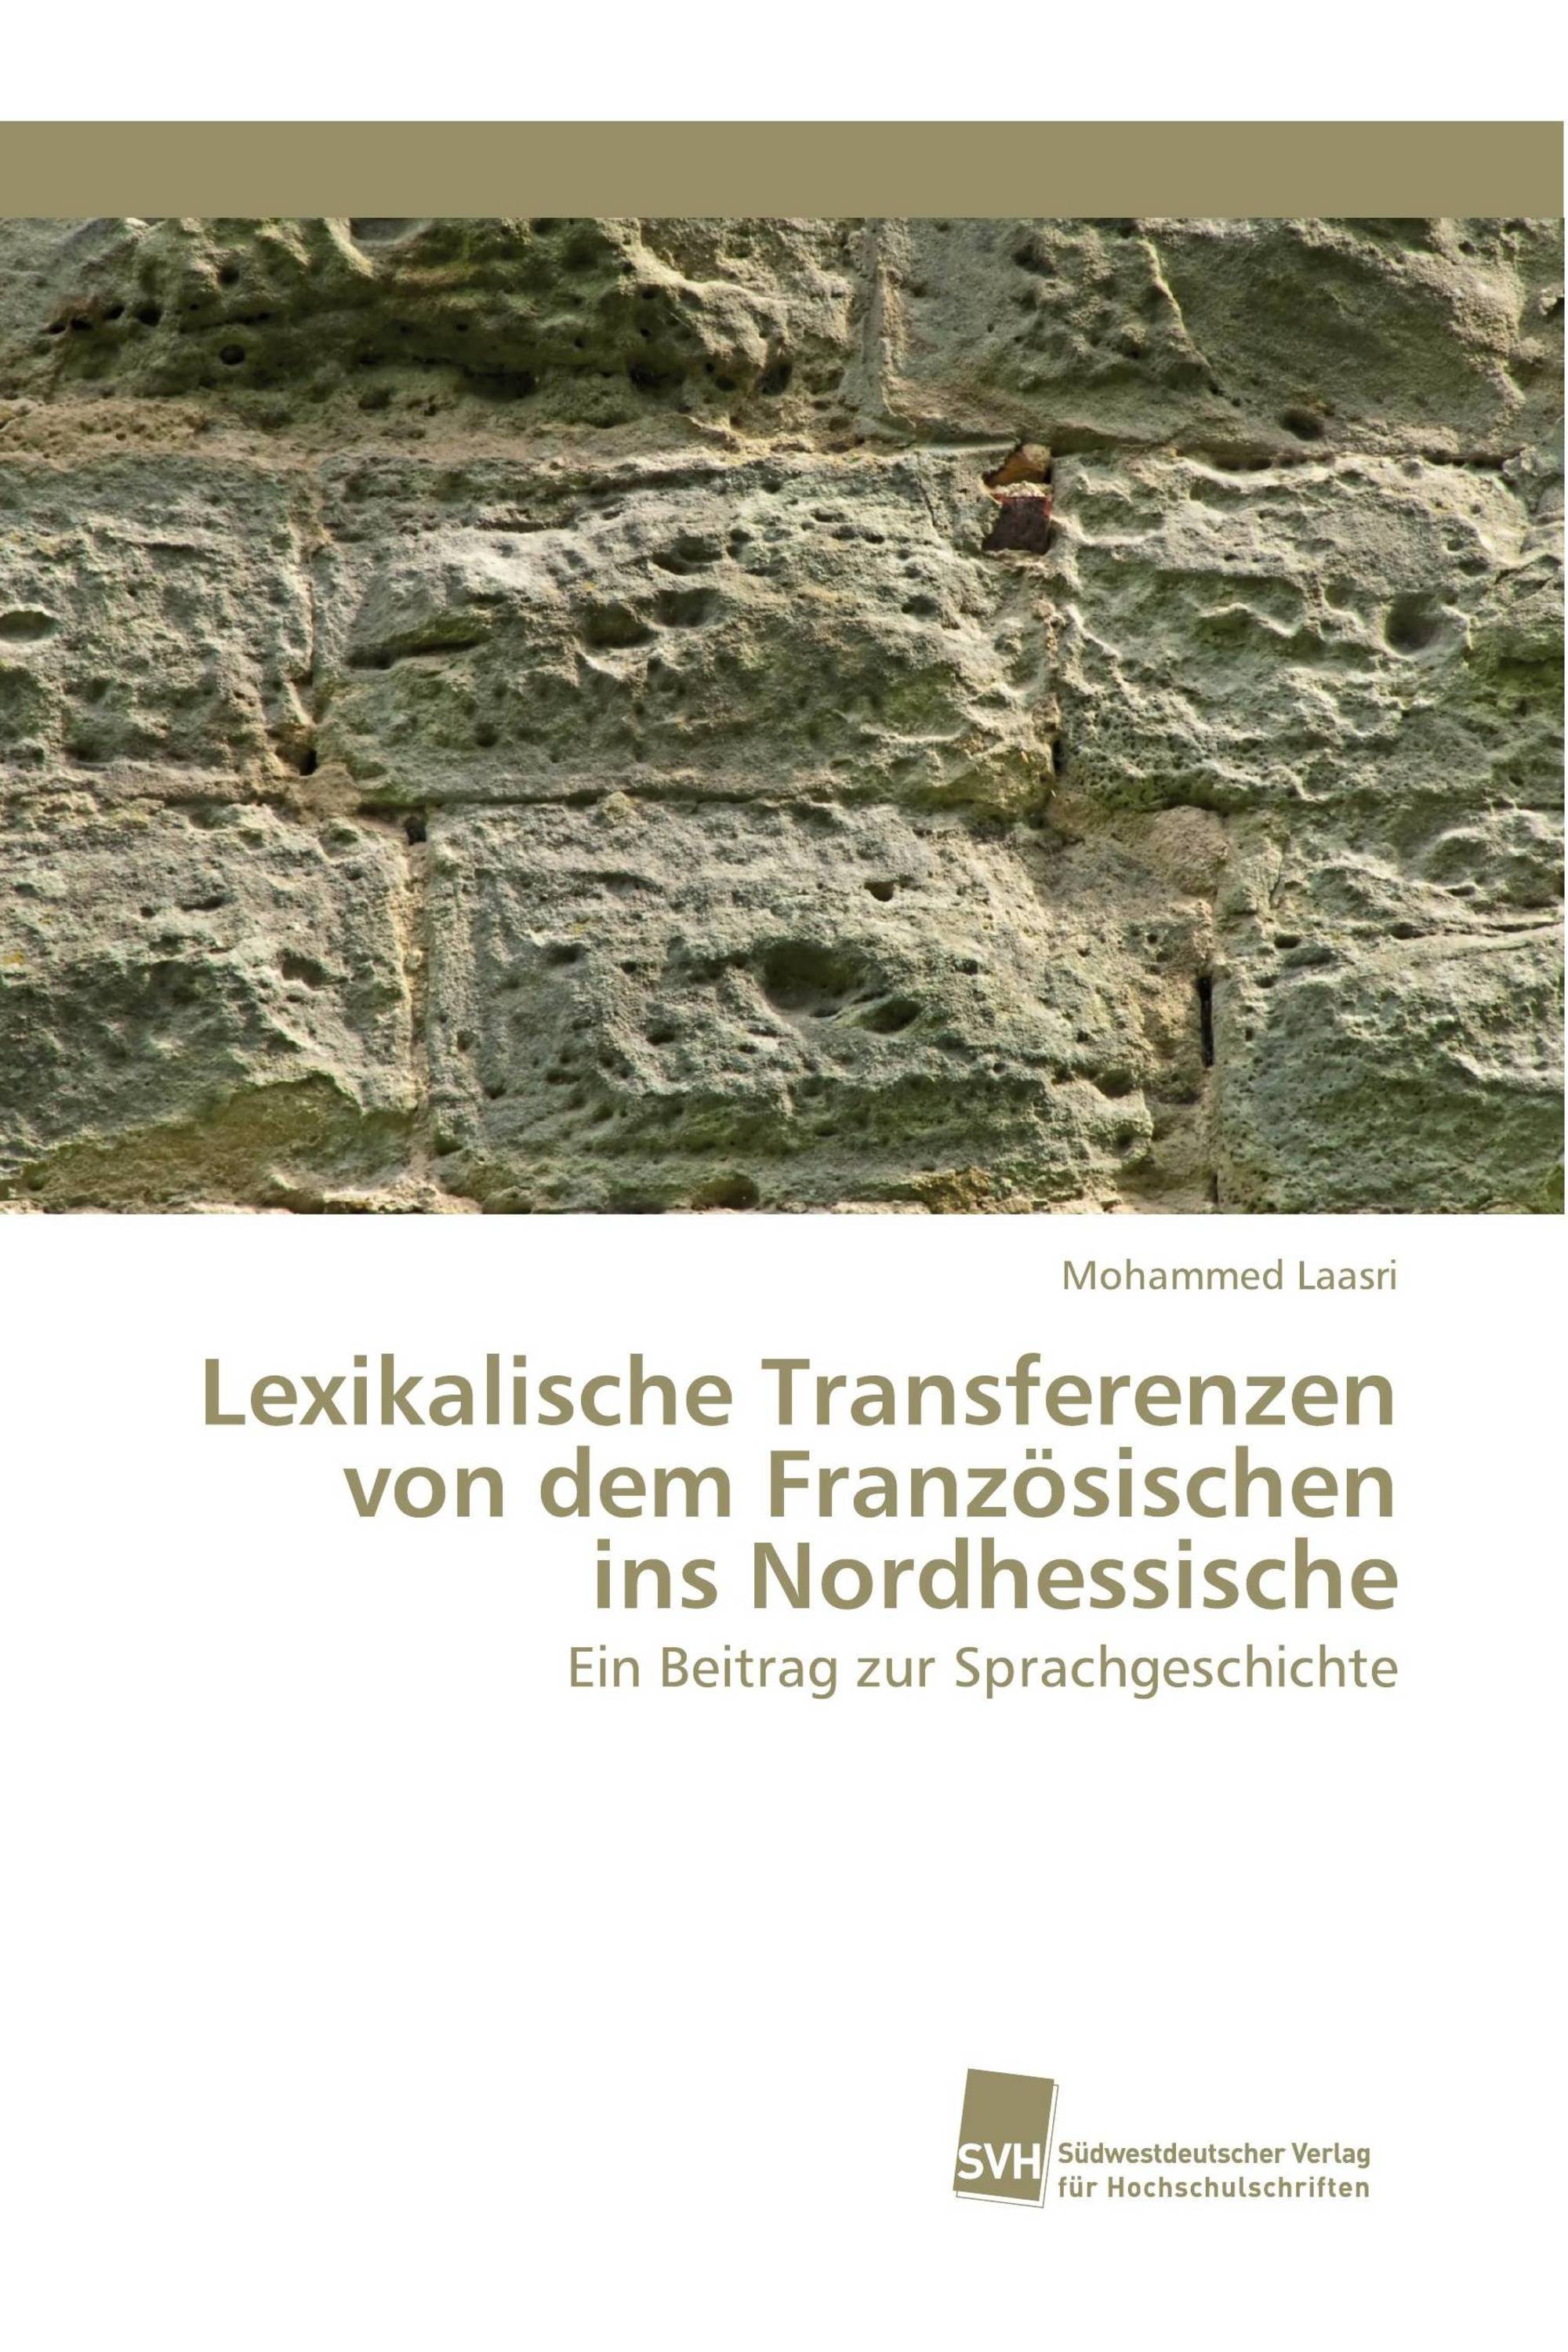 Lexikalische Transferenzen von dem Französischen ins Nordhessische